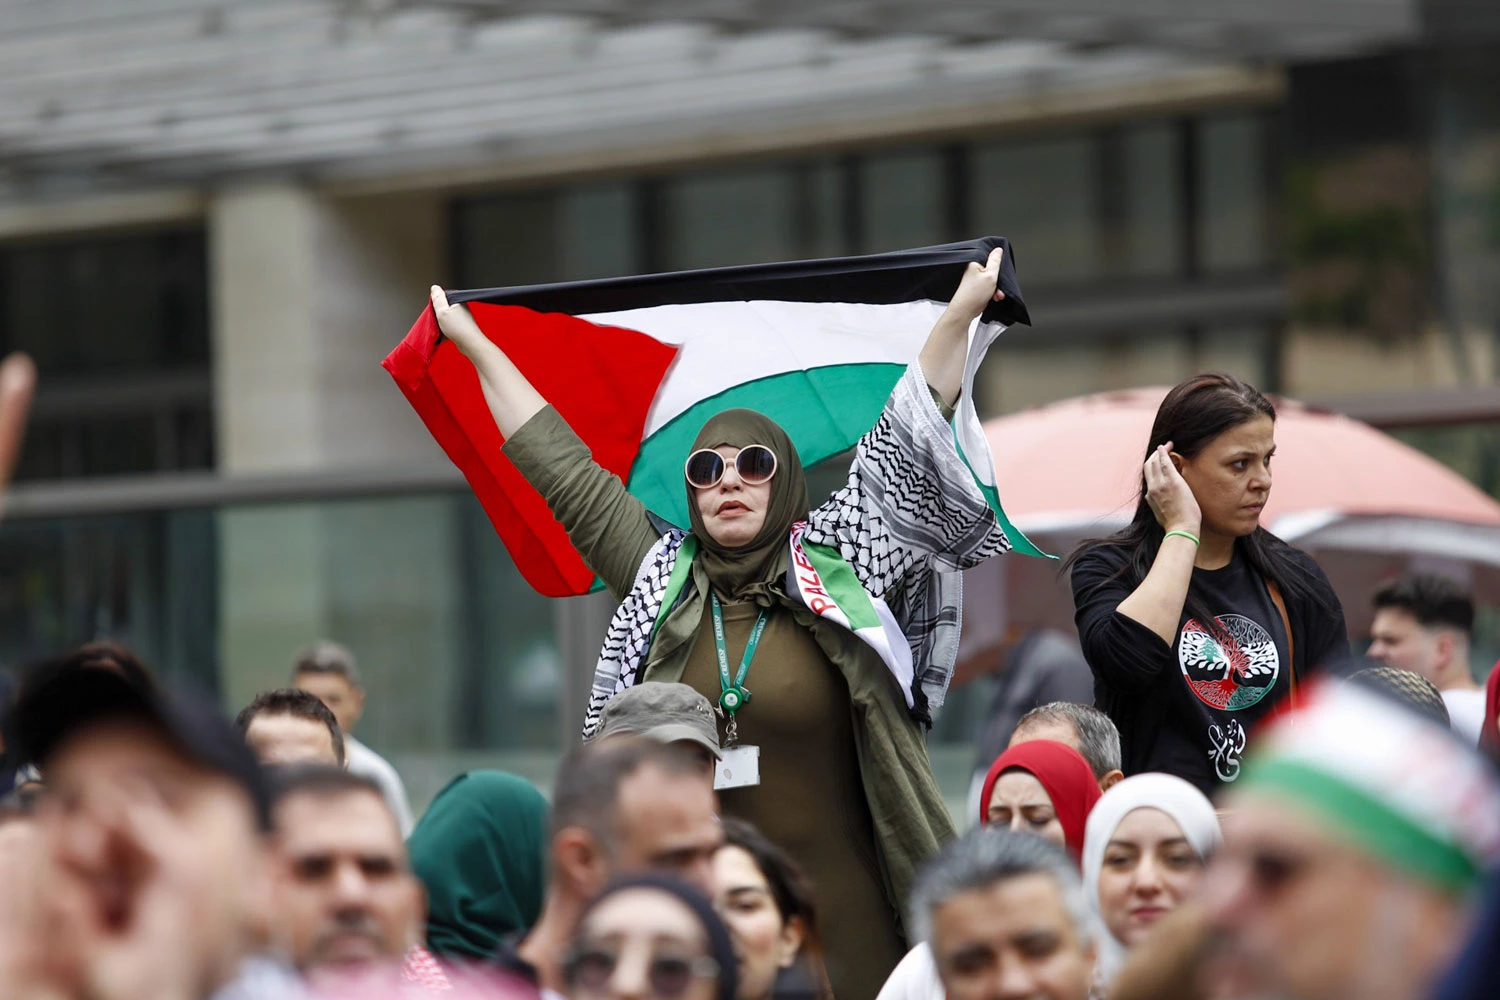 Na manha deste domingo (15), ocorrem novas manifestações em solidariedade ao povo palestino na Avenida Paulista (SP). Foto: Wagner Vilas/Agência Enquadrar/Folhapress